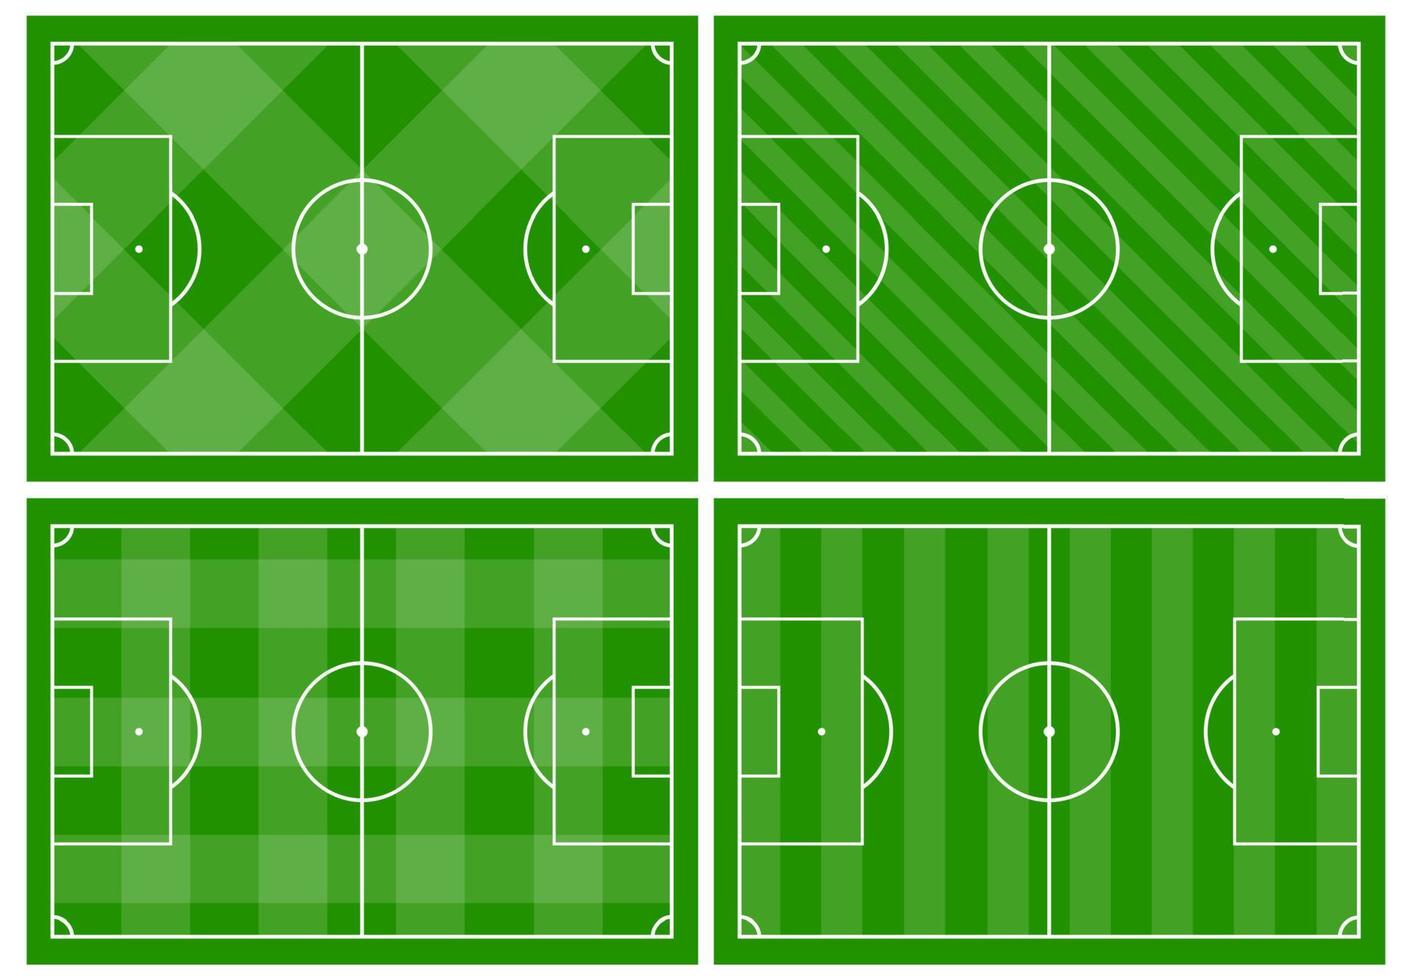 reeks van vier Amerikaans voetbal velden met verschillend groen gras ornamenten. voetbal veld- voor spelen. vector illustratie